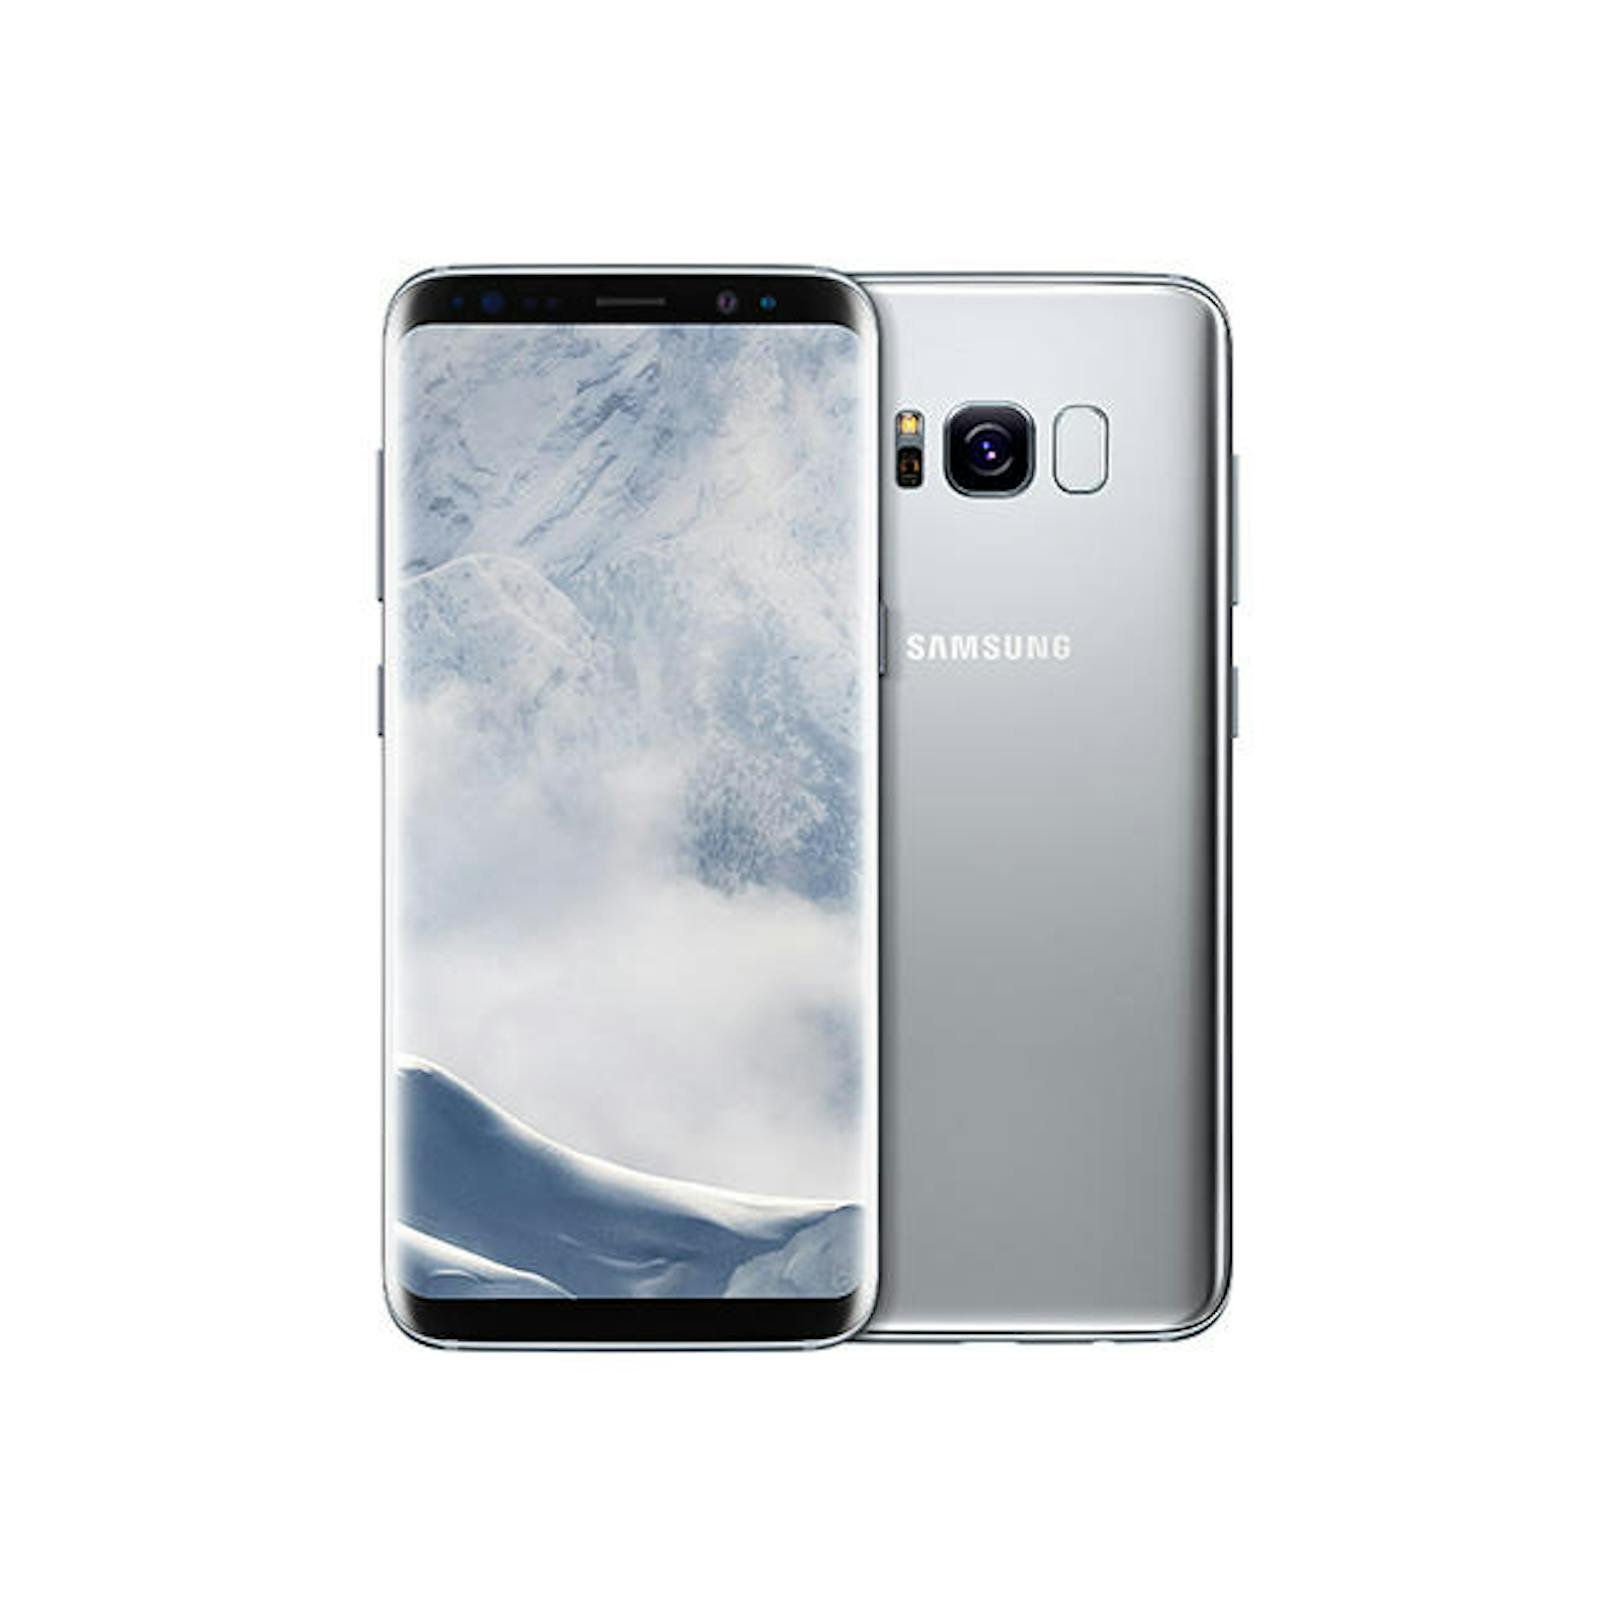 Samsung präsentierte die neuen Galaxy S8 Modelle, und sie sind groß, stark und teuer. Beim Galaxy S8 und S8+ setzt Samsung ganz auf das sogenannte Infinity Display. Dieses kommt fast ohne Rand aus und ist etwas breiter, um bequem Videos und Filme anschauen zu können. Die Auflösung des 5,8 beziehungsweise 6,2 Zoll großen Displays beträgt 2.960 x 1.440 Pixel.